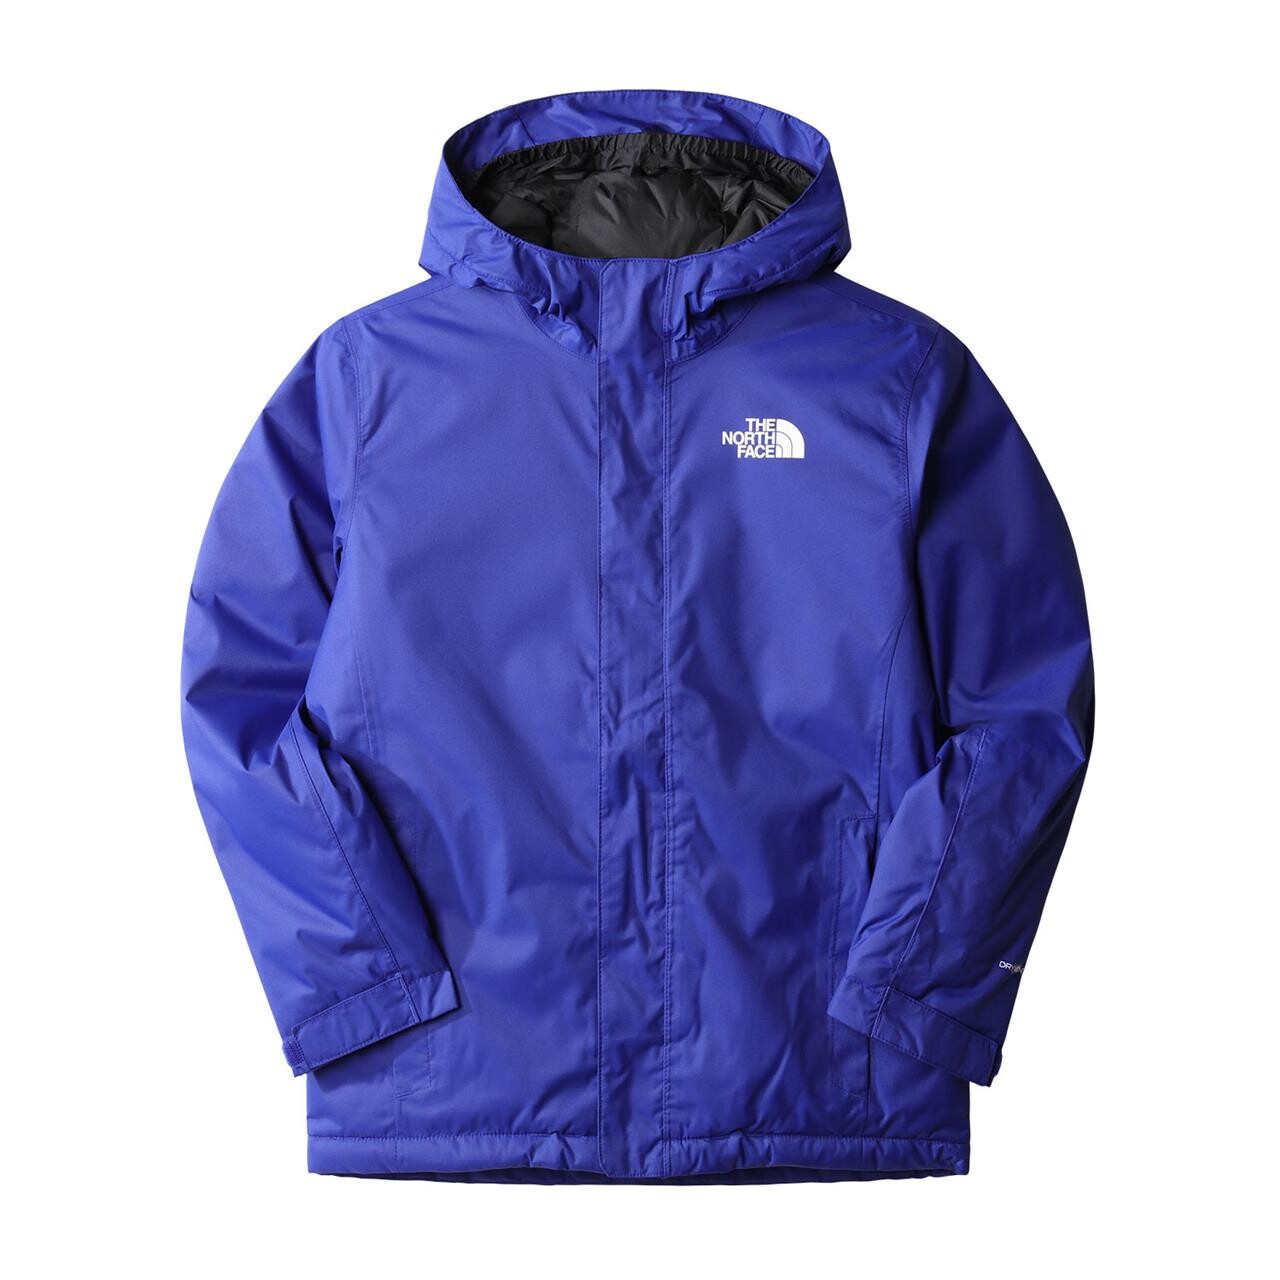 The North Face Teens Snowquest Jacket (Blå (LAPIS BLUE) Large)